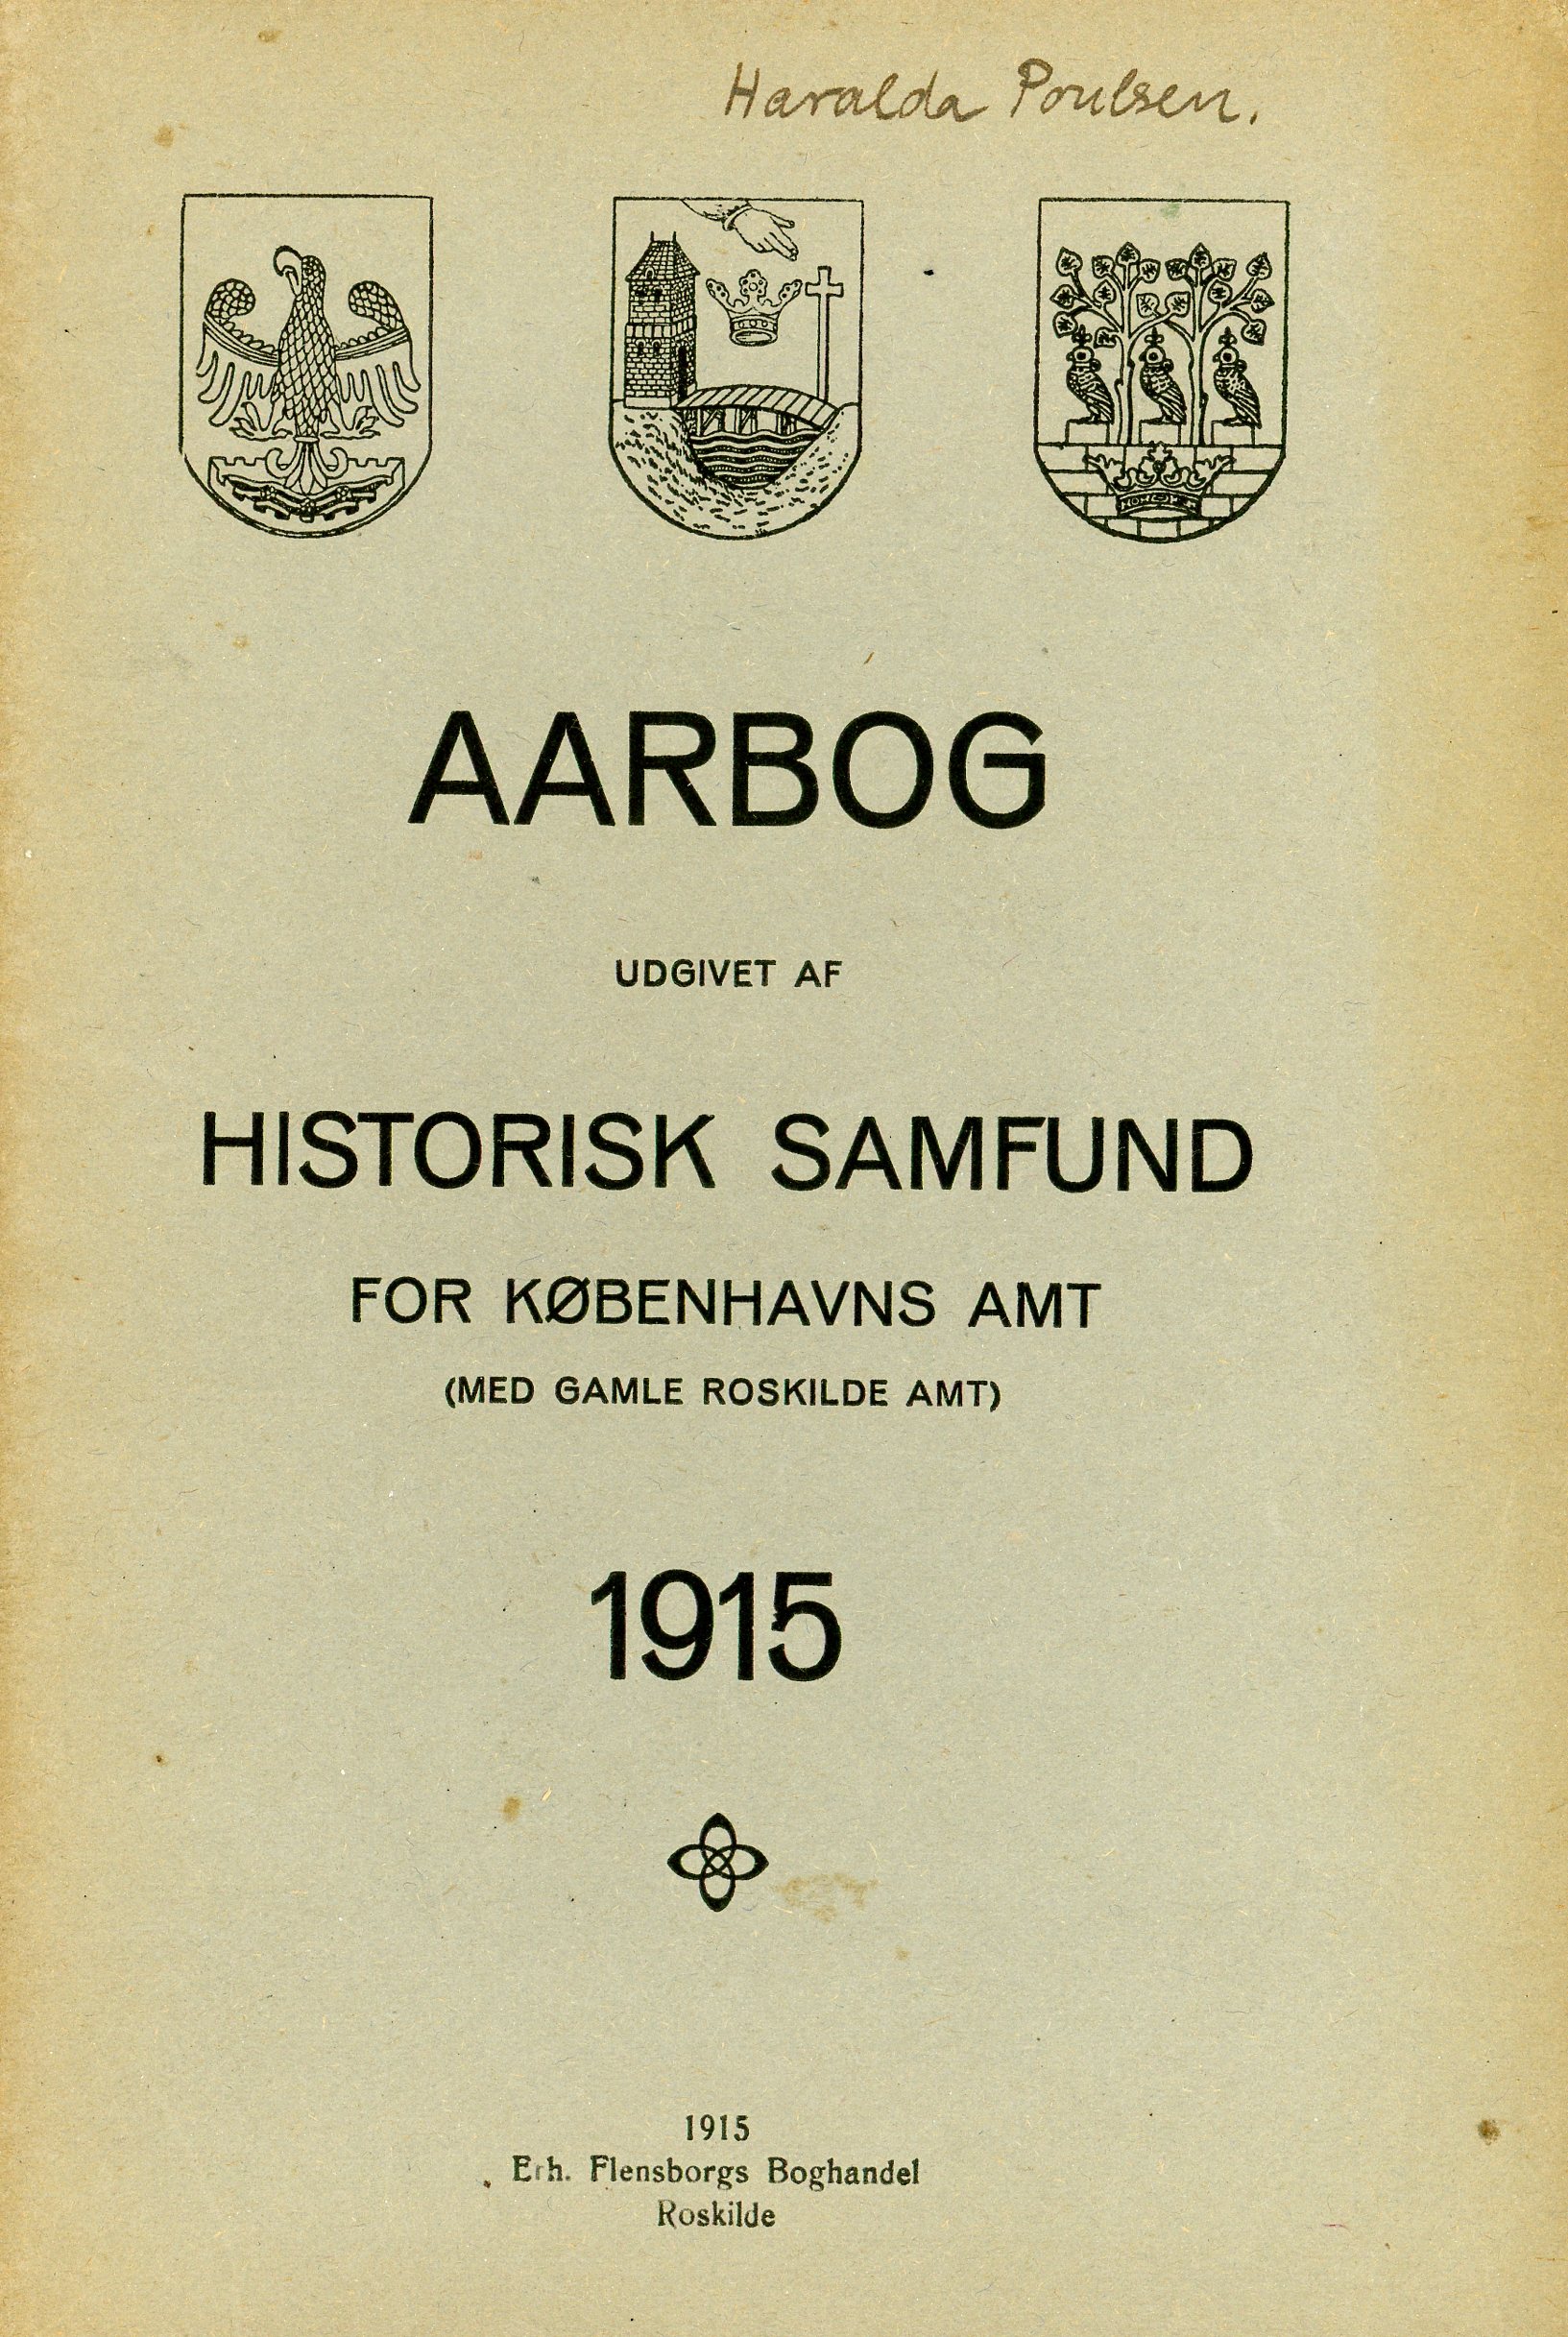 					Se Nr. 1 (1915): Aarbog udgivet af Historisk Samfund for Københavns Amt (med Gamle Roskilde Amt) 1915
				